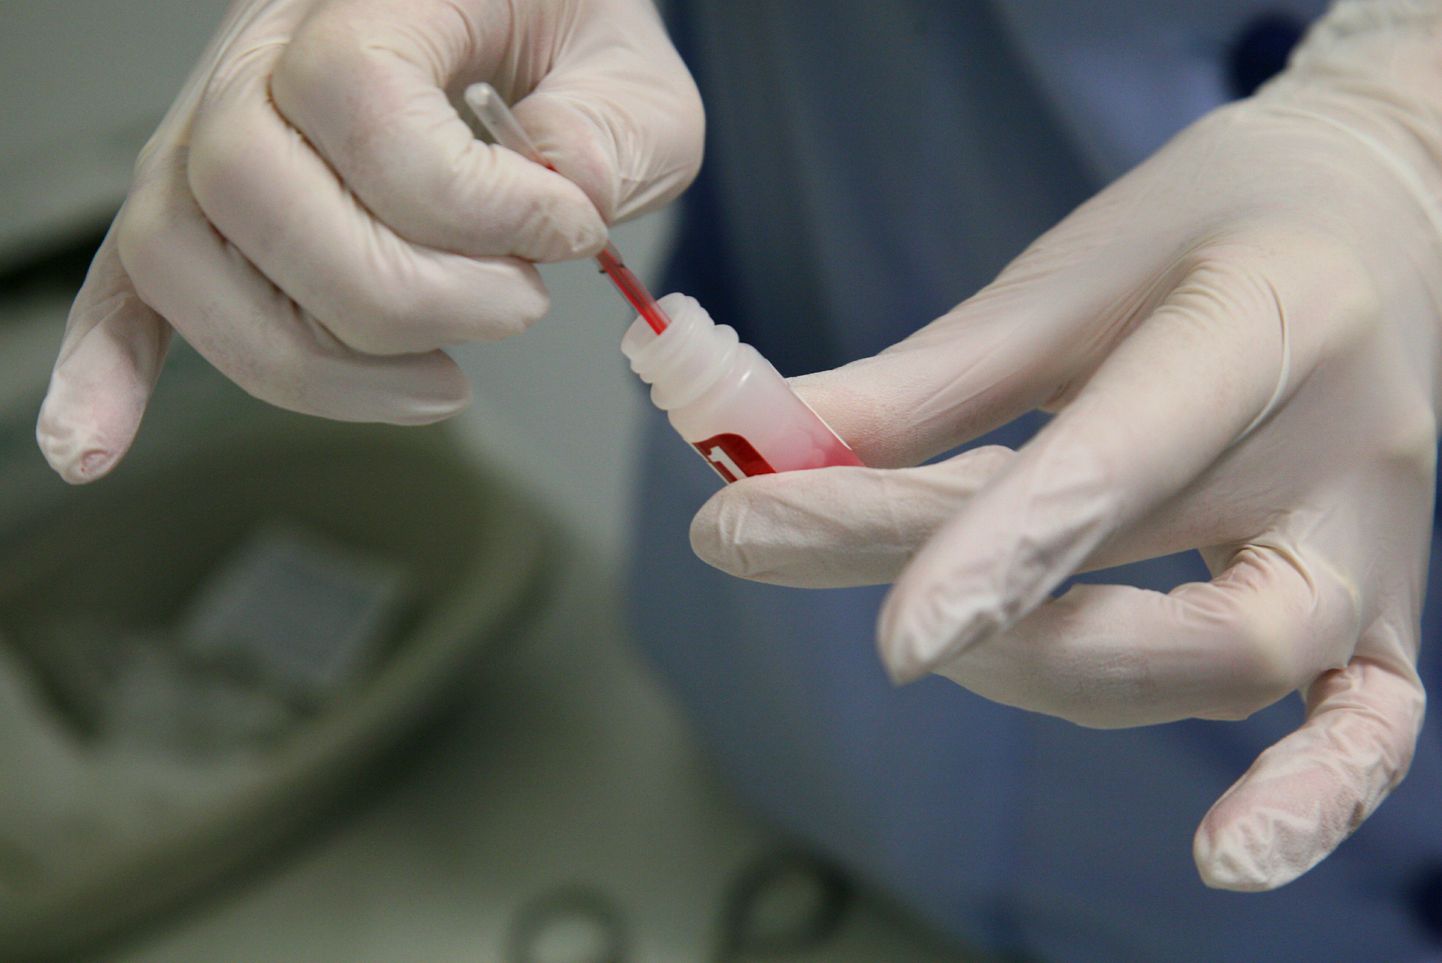 Aidsi kabinet Pärnu haiglas. HIVi kiirtesti komplekt. Pildil vere lisamine testlahusesse.